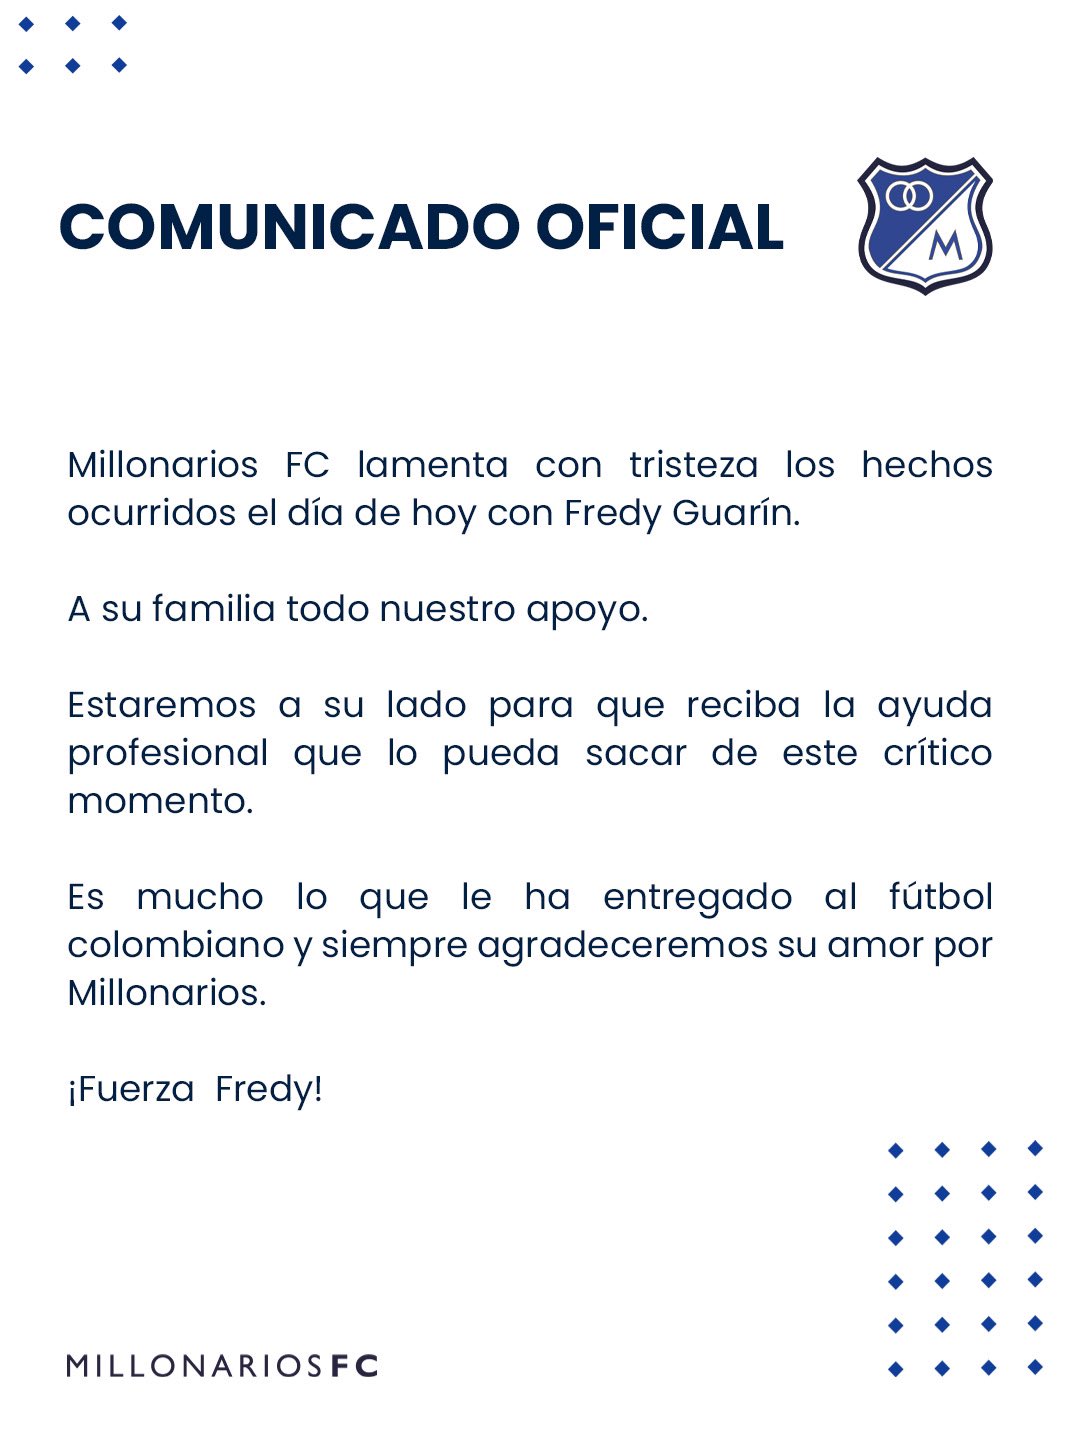 Comunicado de Millonarios sobre Fredy Guarín. 